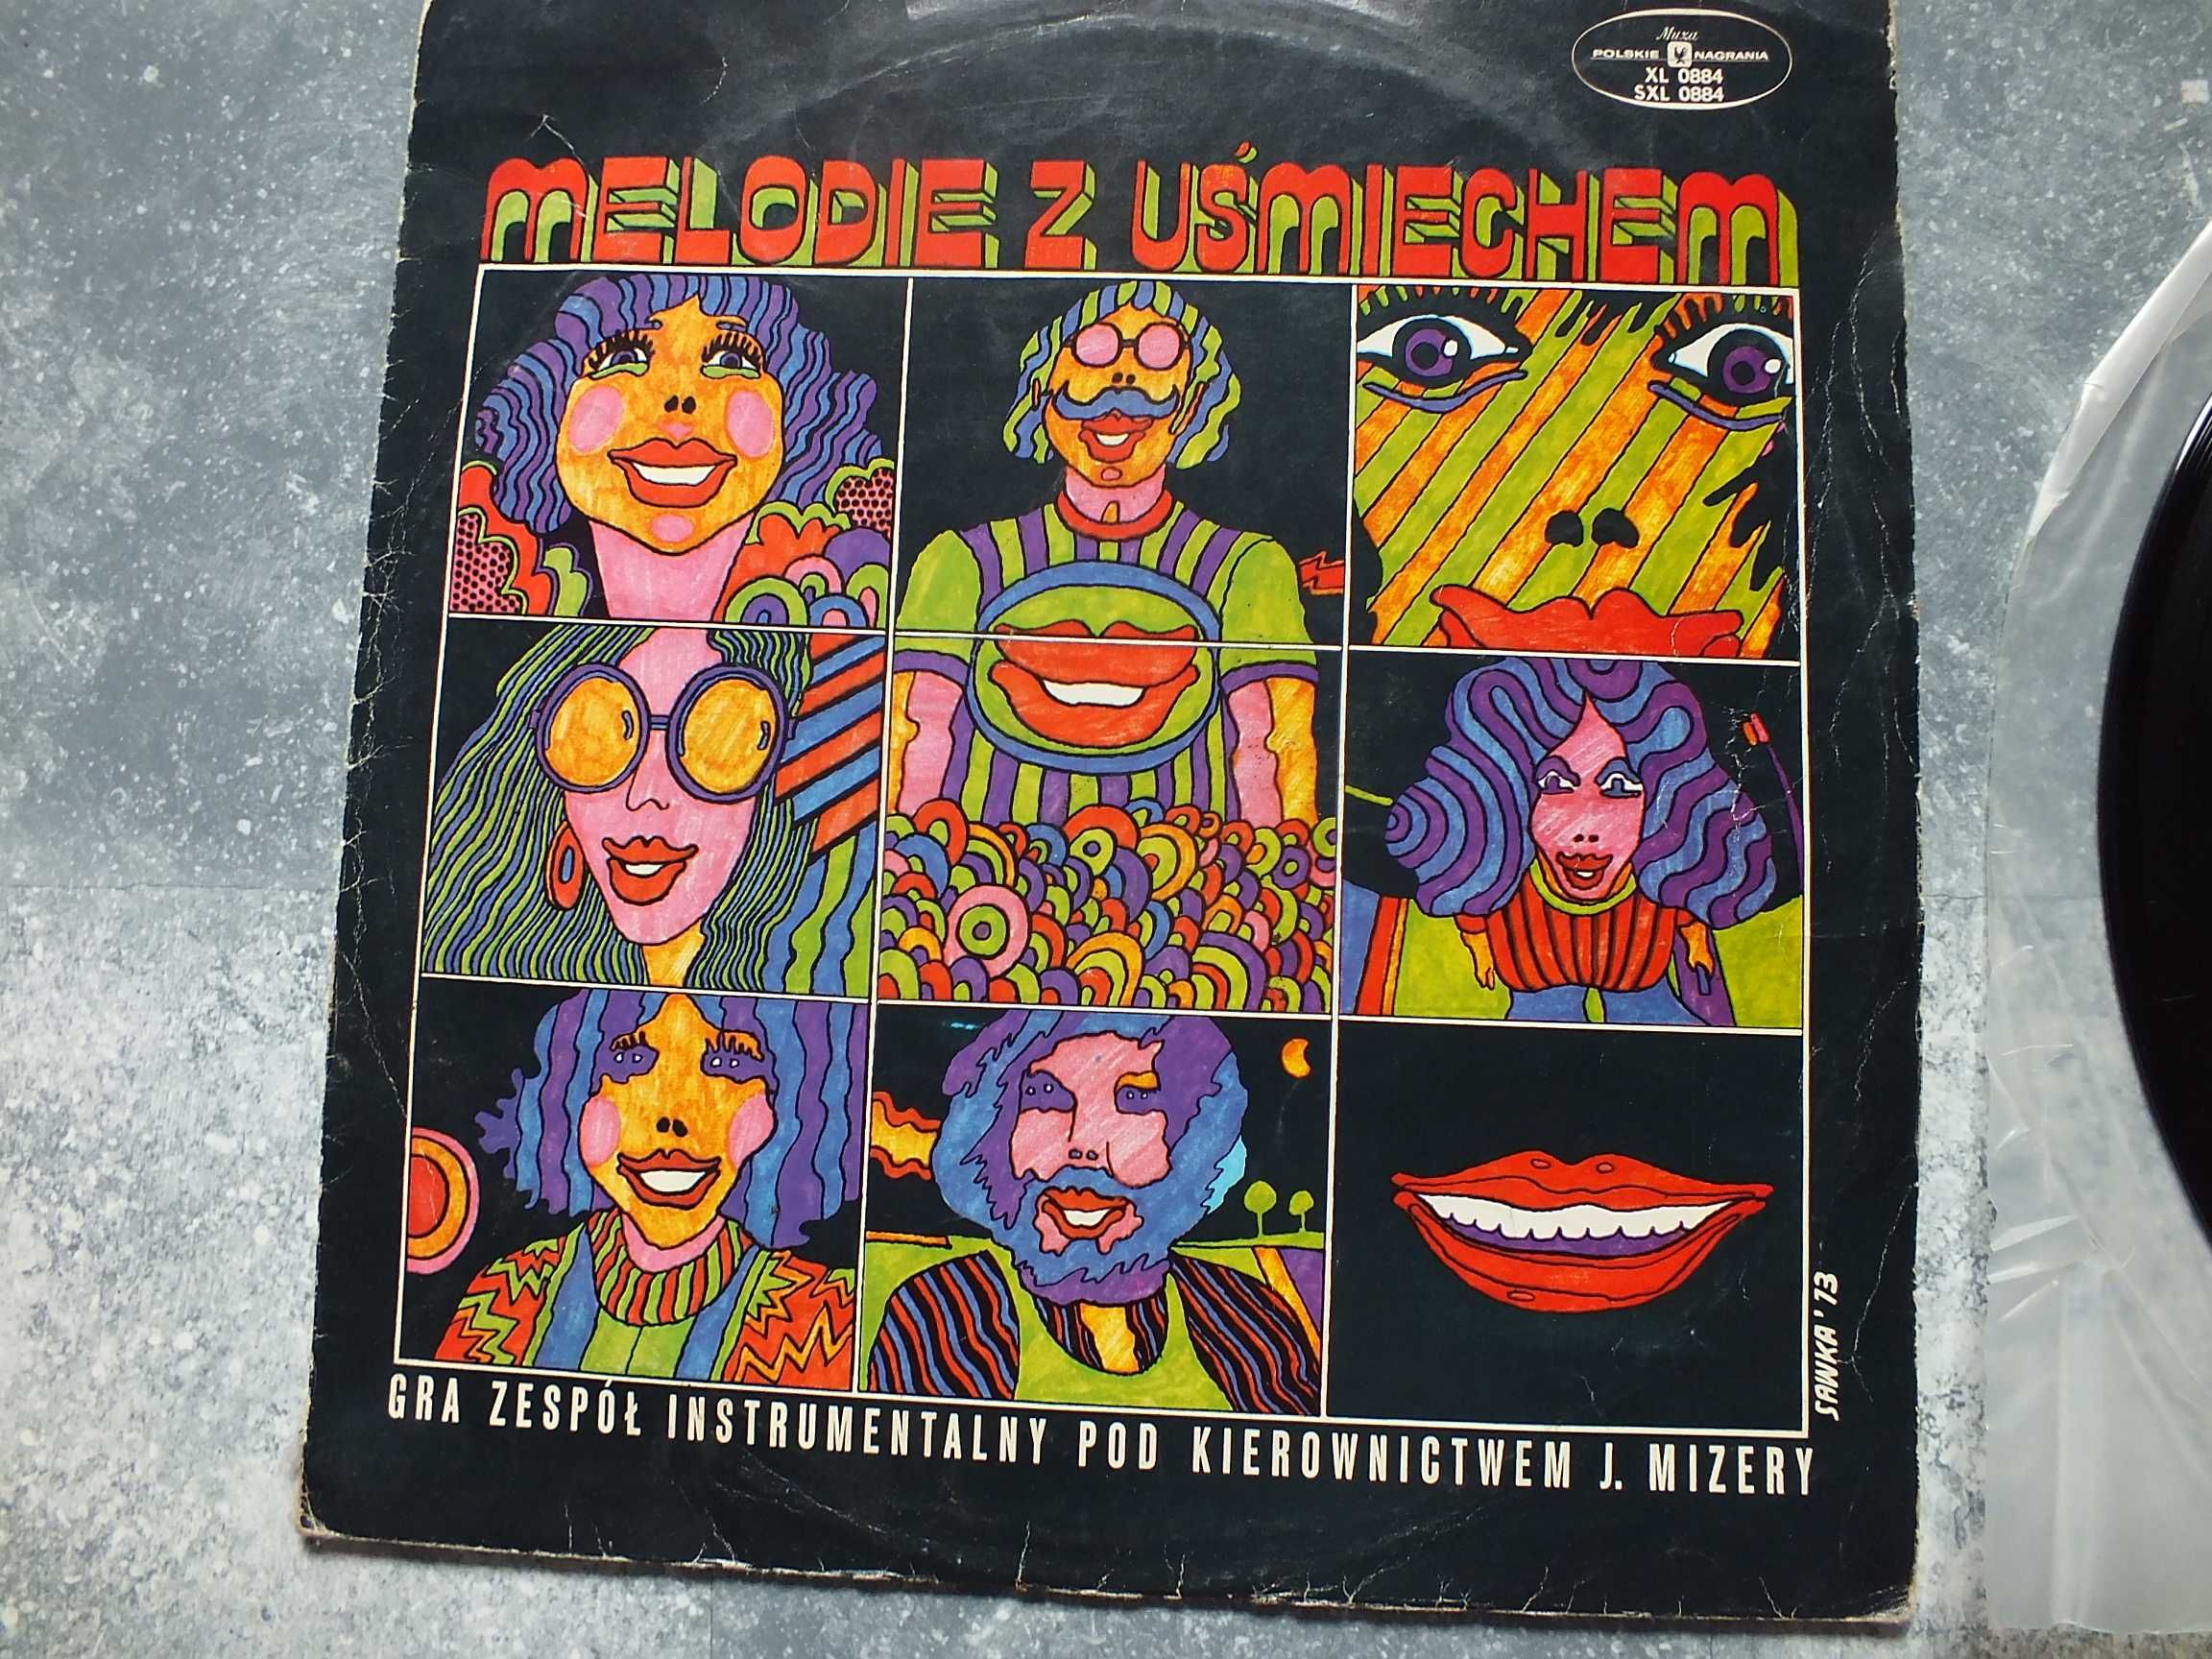 płyta winylowa LP, JÓZEF MIZERA - Melodie z Uśmiechem 1977r.,Muza